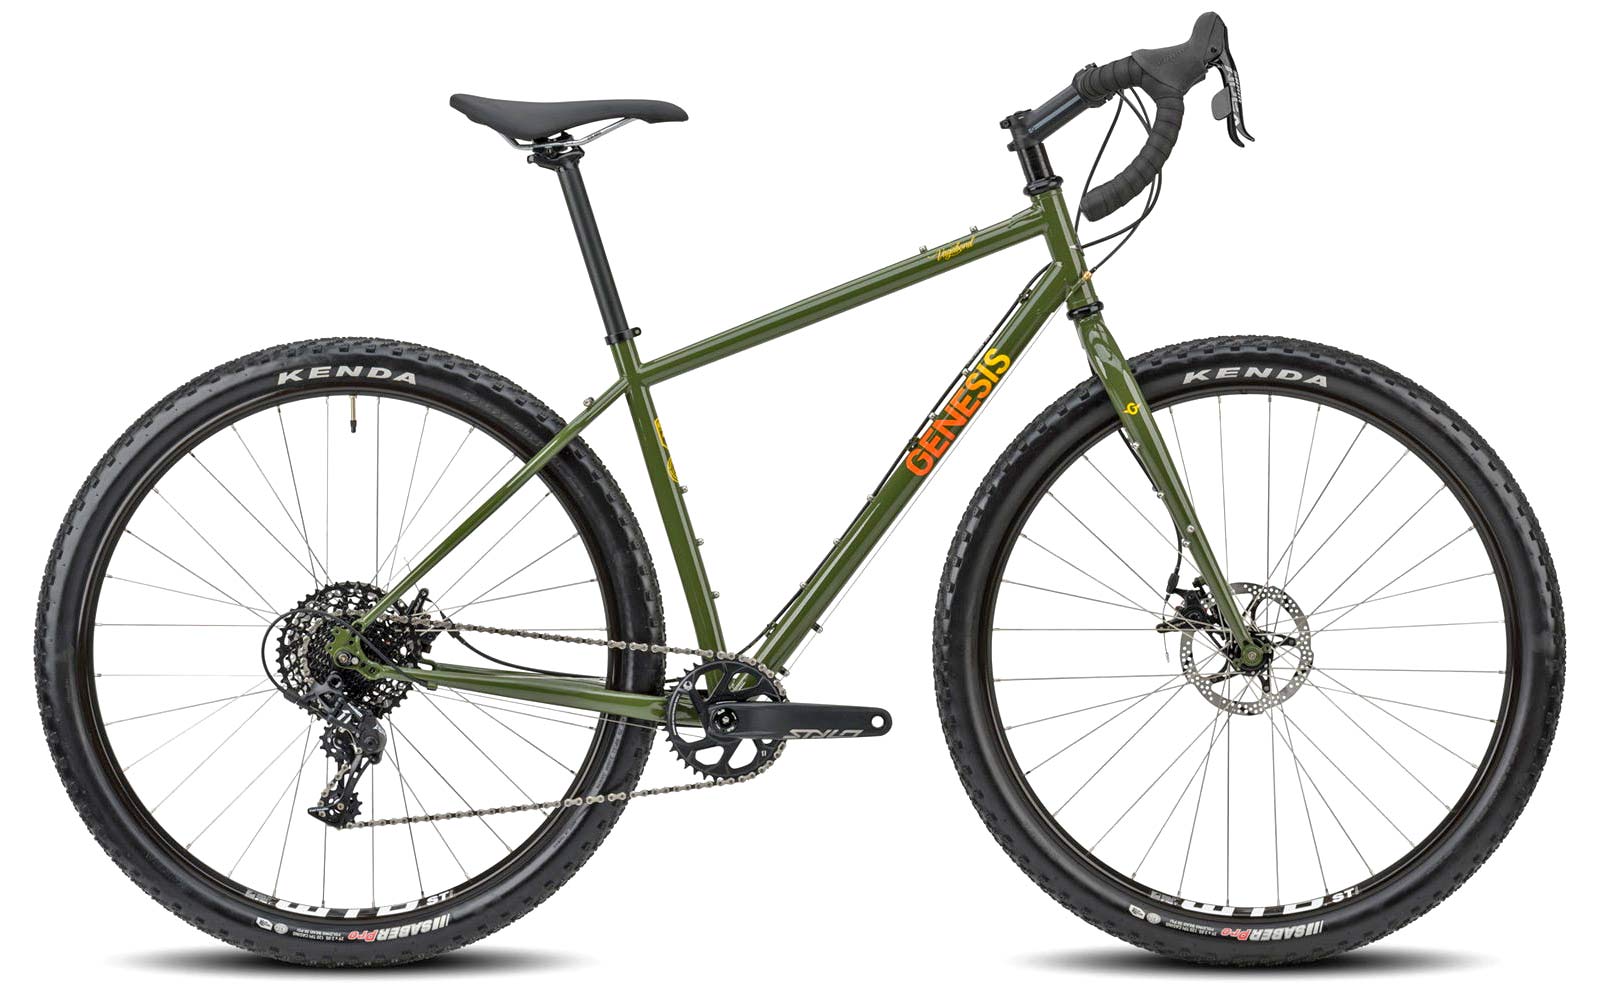 2021 Genesis Vagabond steel monstercross bike, Reynolds 725 steel adventure bikepacking gravel mountain bike, complete bike